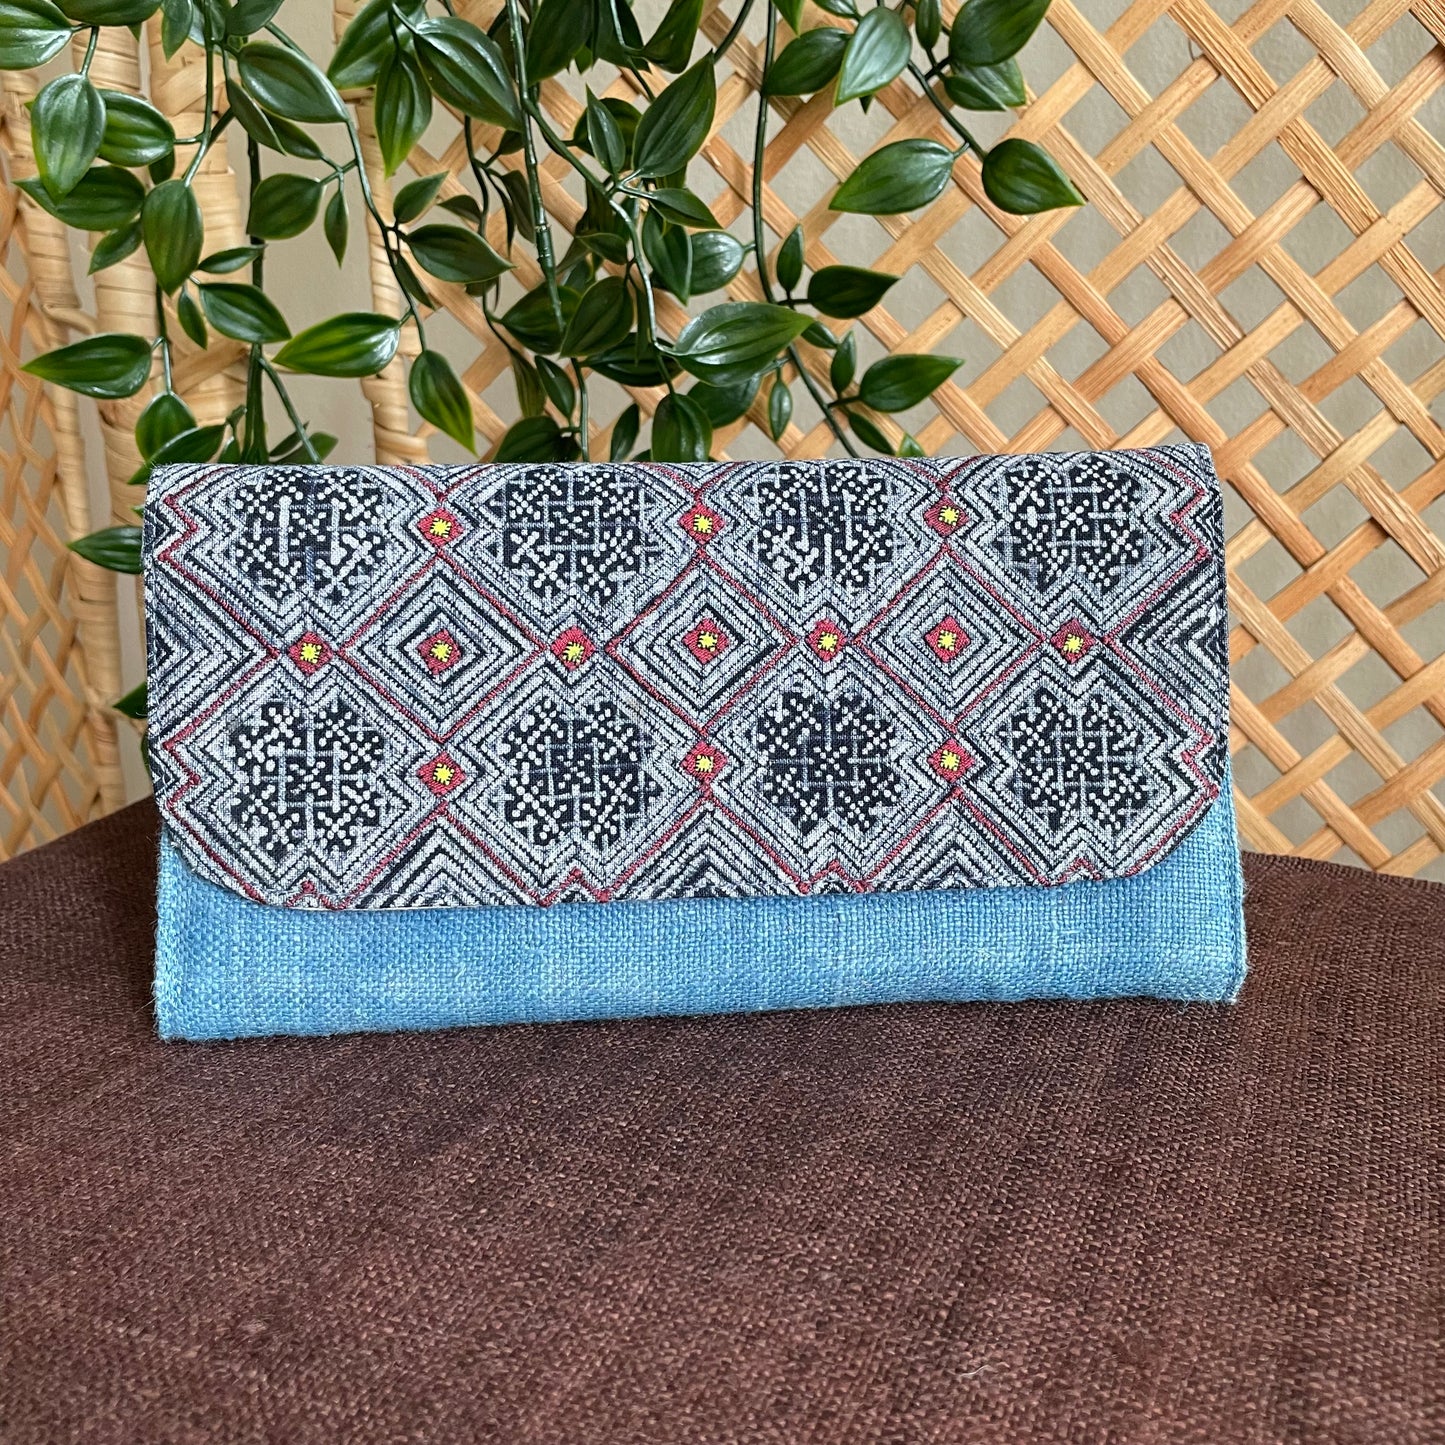 Ljusblå lång handväska, Hampa tyg, Indigo Batik tyg, H'mong mönster